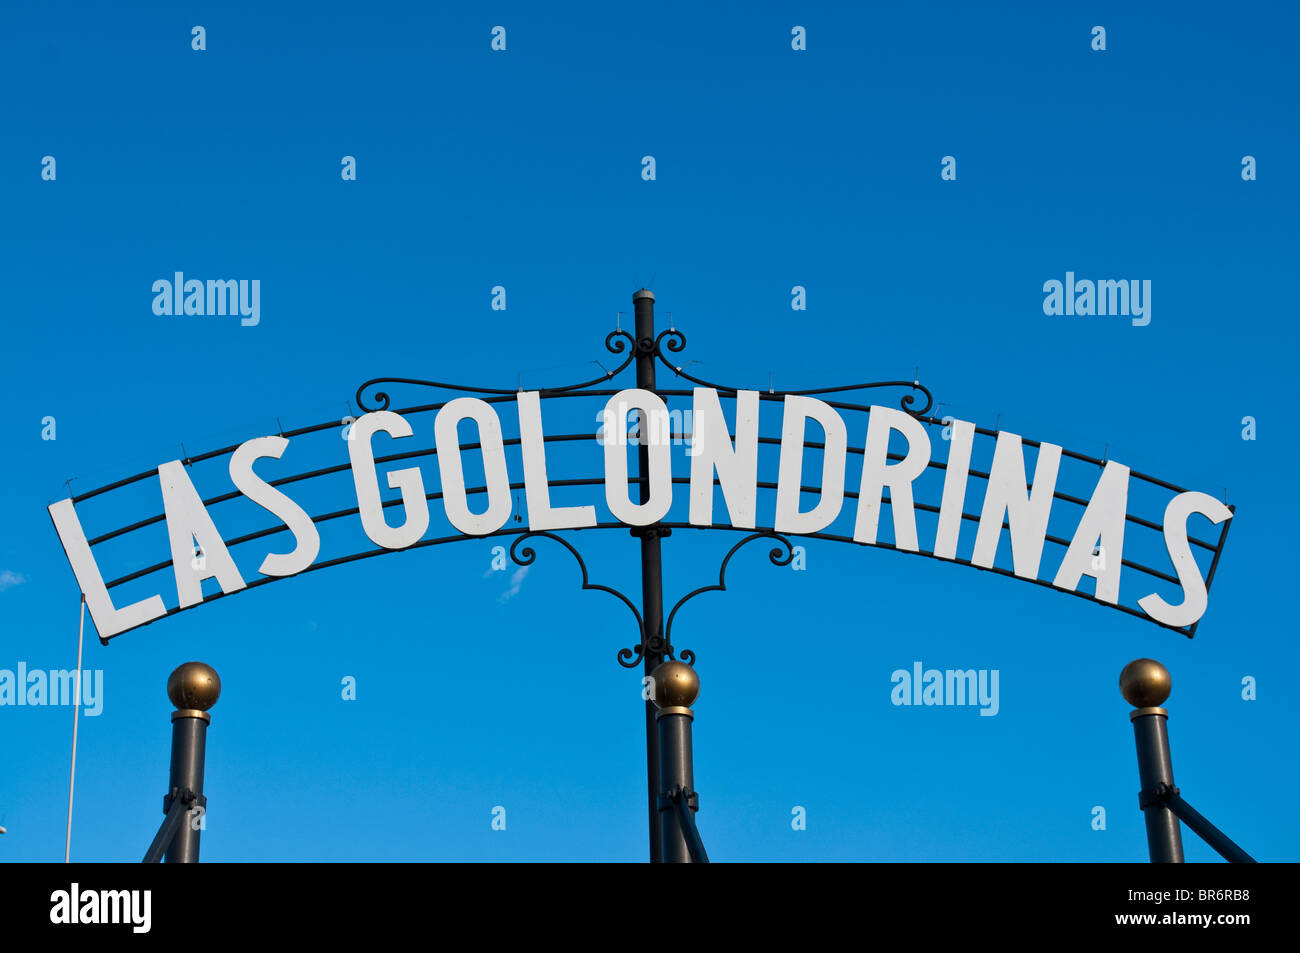 Las golondrinas, Barcelona, Catalonia Stock Photo